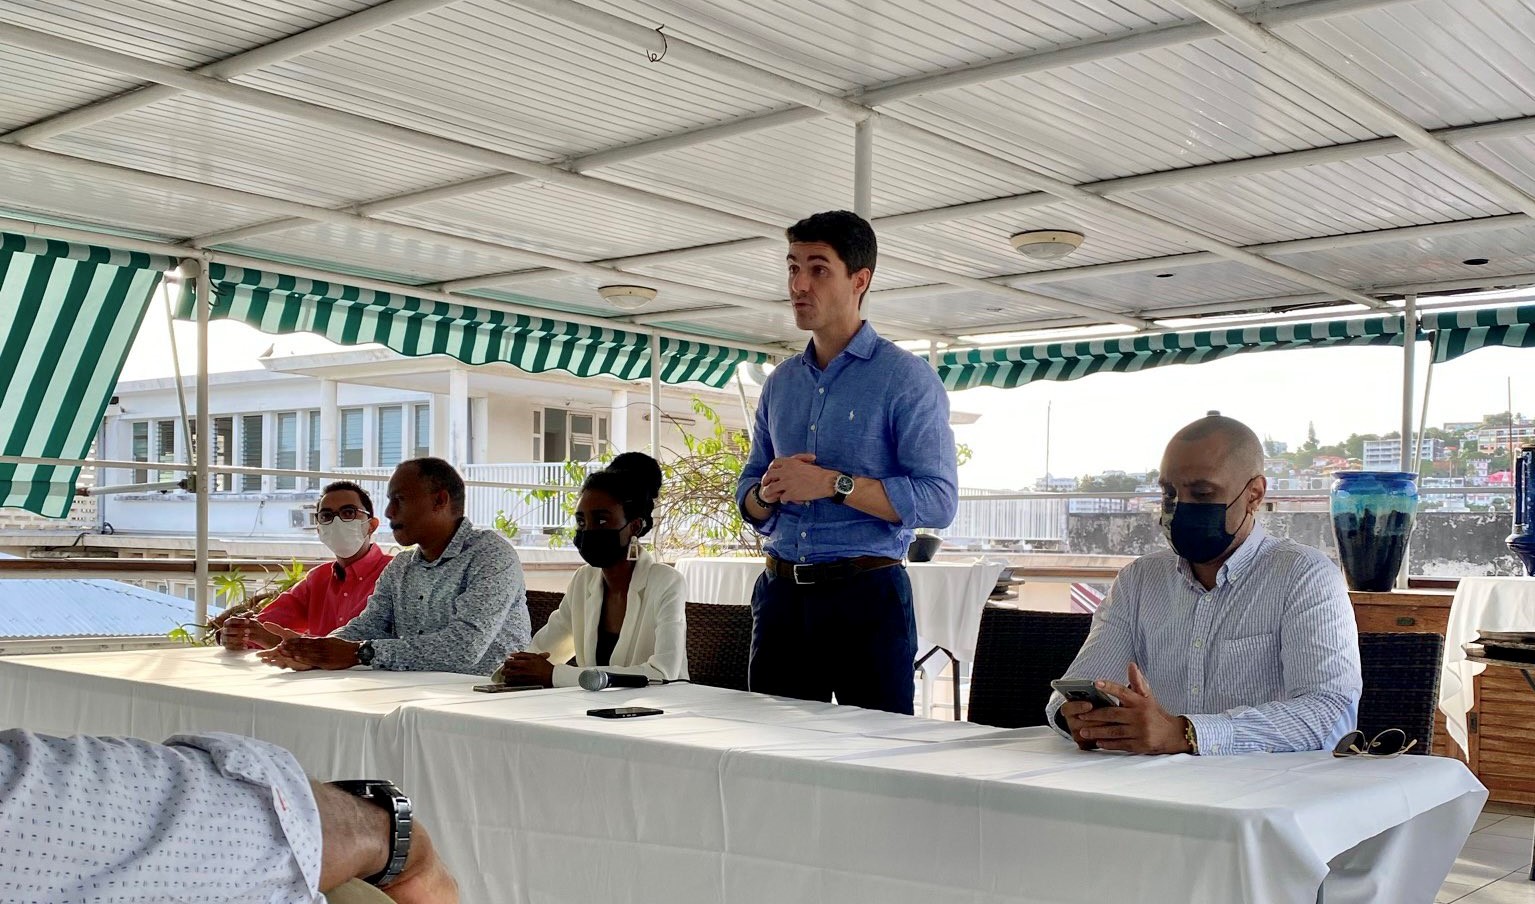     Elections présidentielles : le député Aurélien Pradié des Républicains en visite en Martinique

